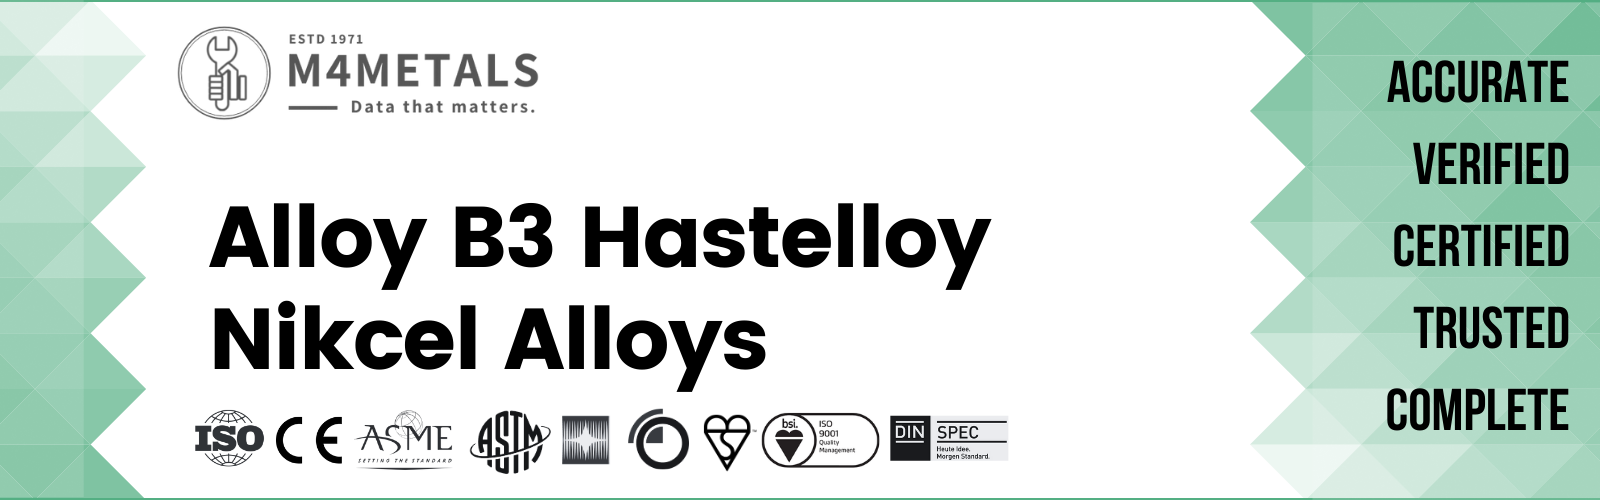 Hastelloy Alloy B3